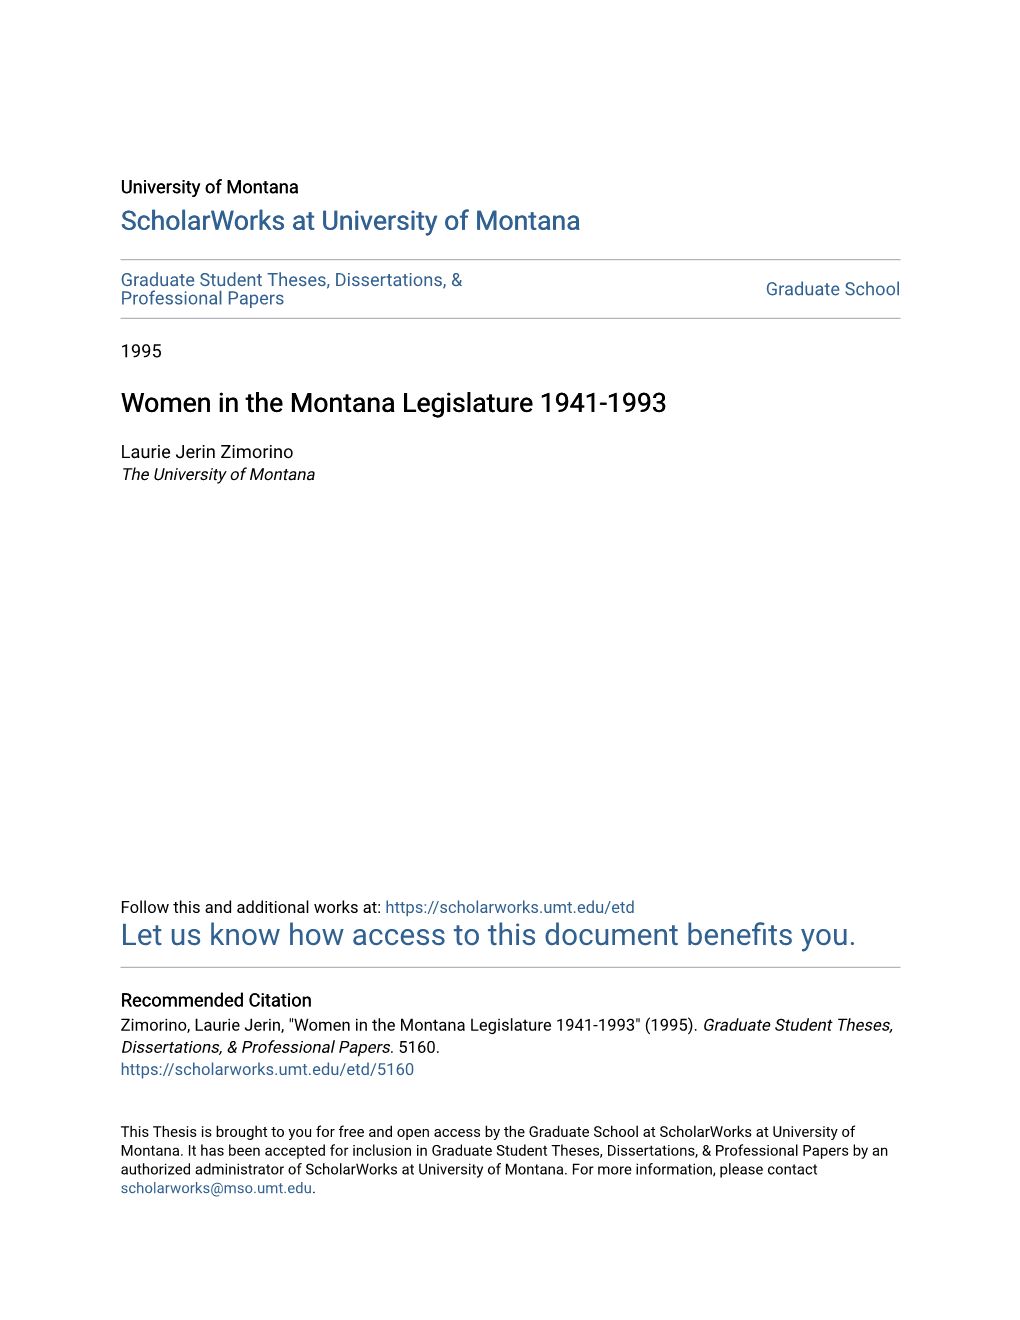 Women in the Montana Legislature 1941-1993